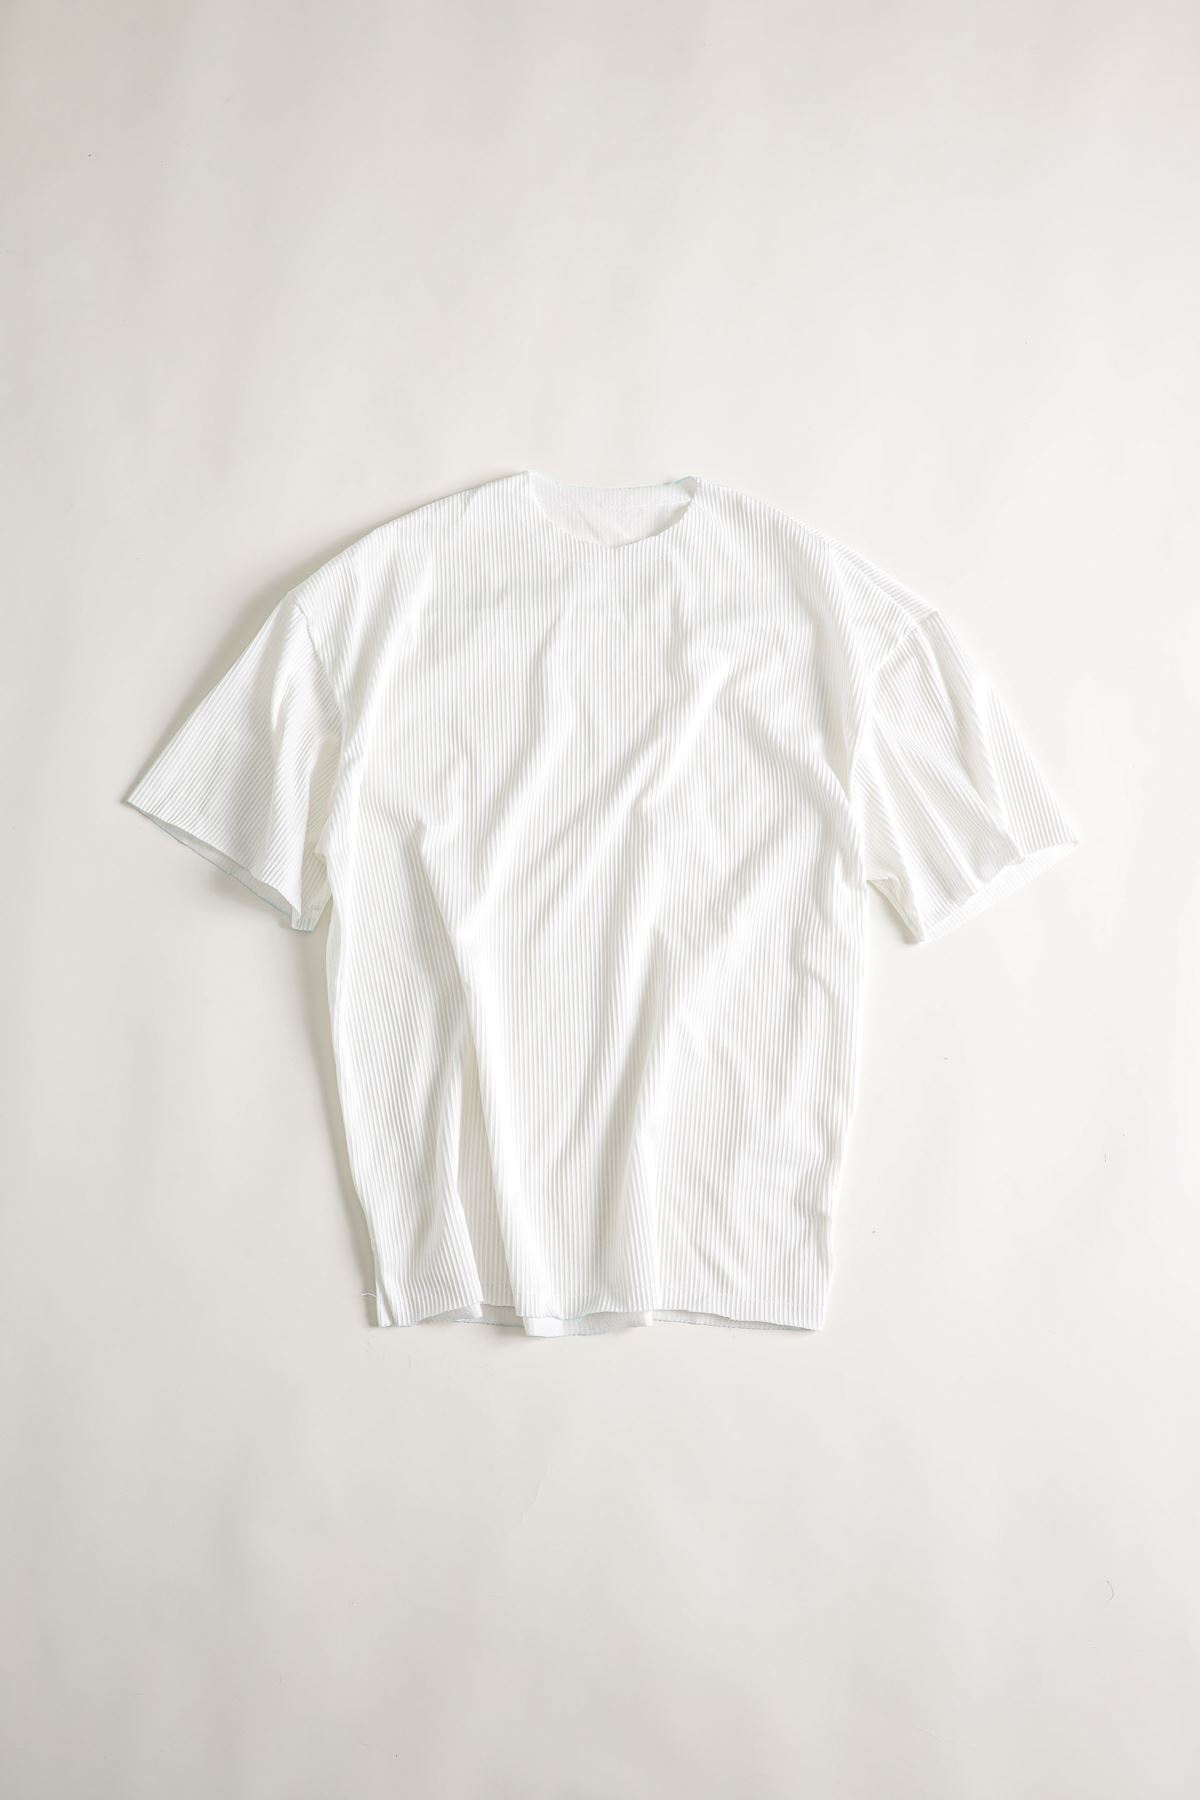 Beyaz Ottoman T-Shirt